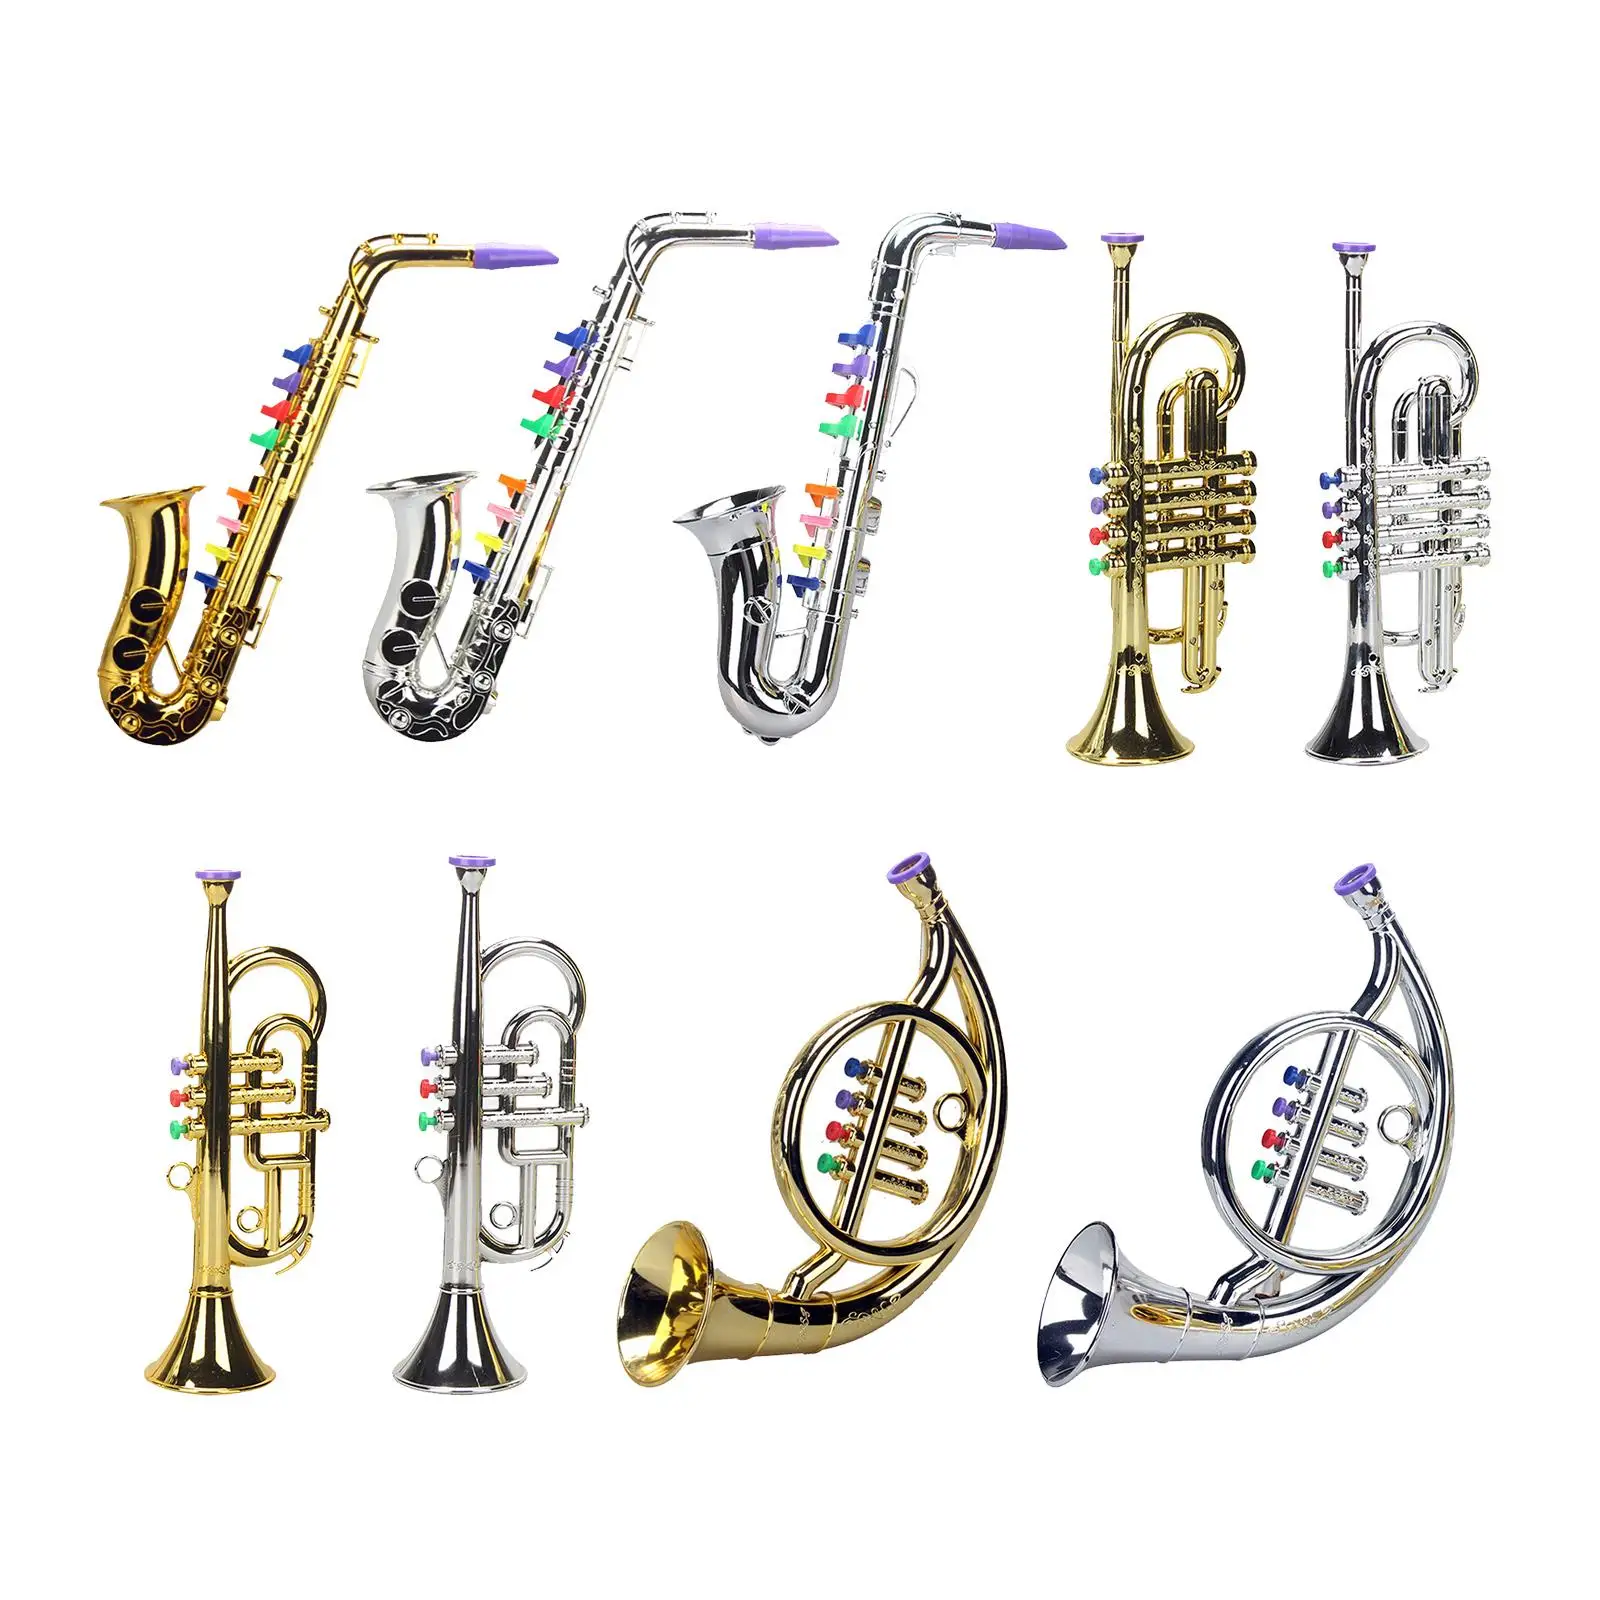 Musical 8 Tones Metallic Saxophone Instruments for Party Preschool Children